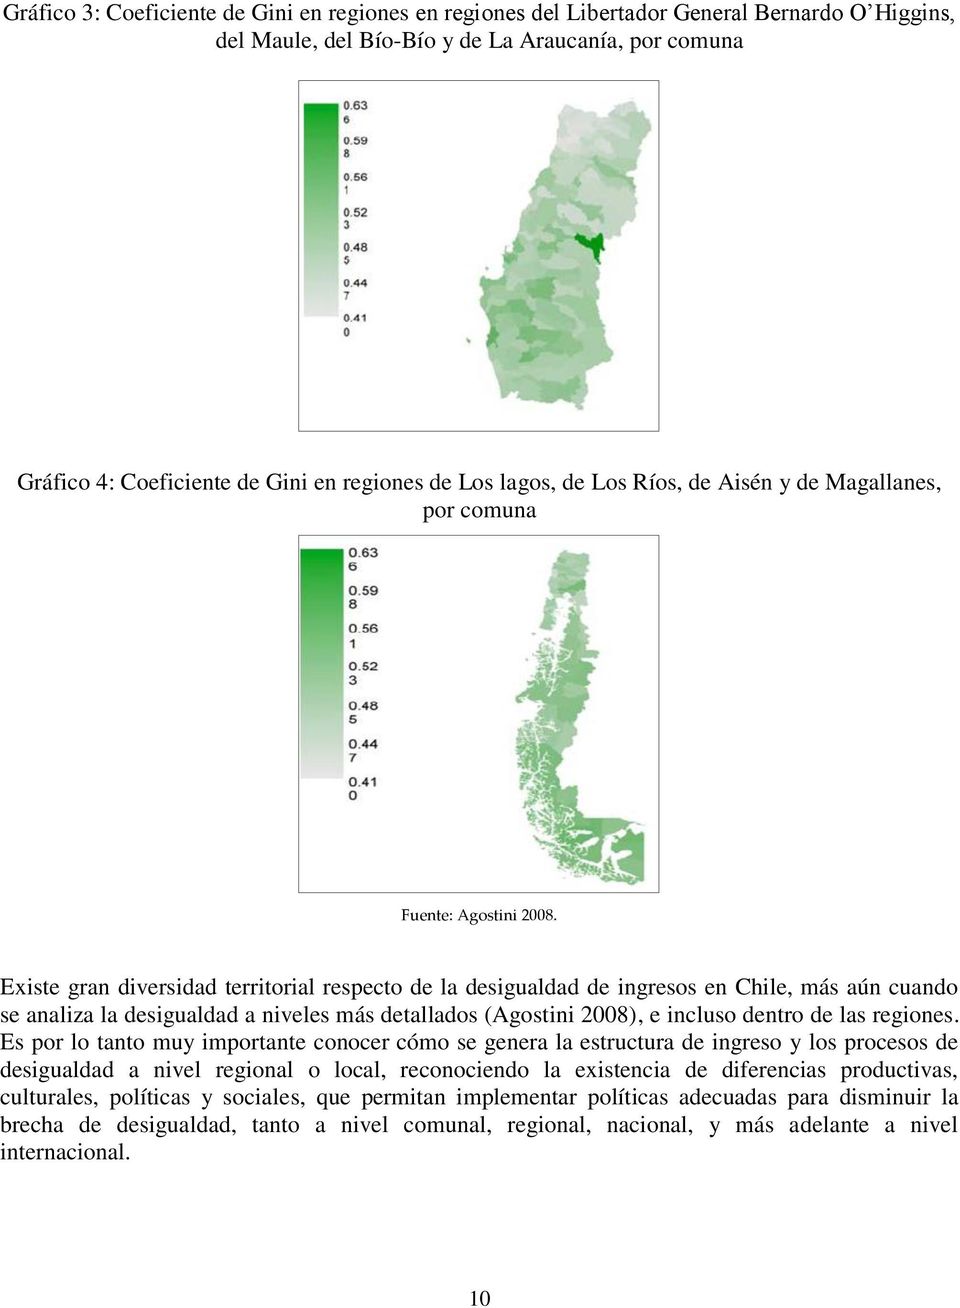 Existe gran diversidad territorial respecto de la desigualdad de ingresos en Chile, más aún cuando se analiza la desigualdad a niveles más detallados (Agostini 2008), e incluso dentro de las regiones.